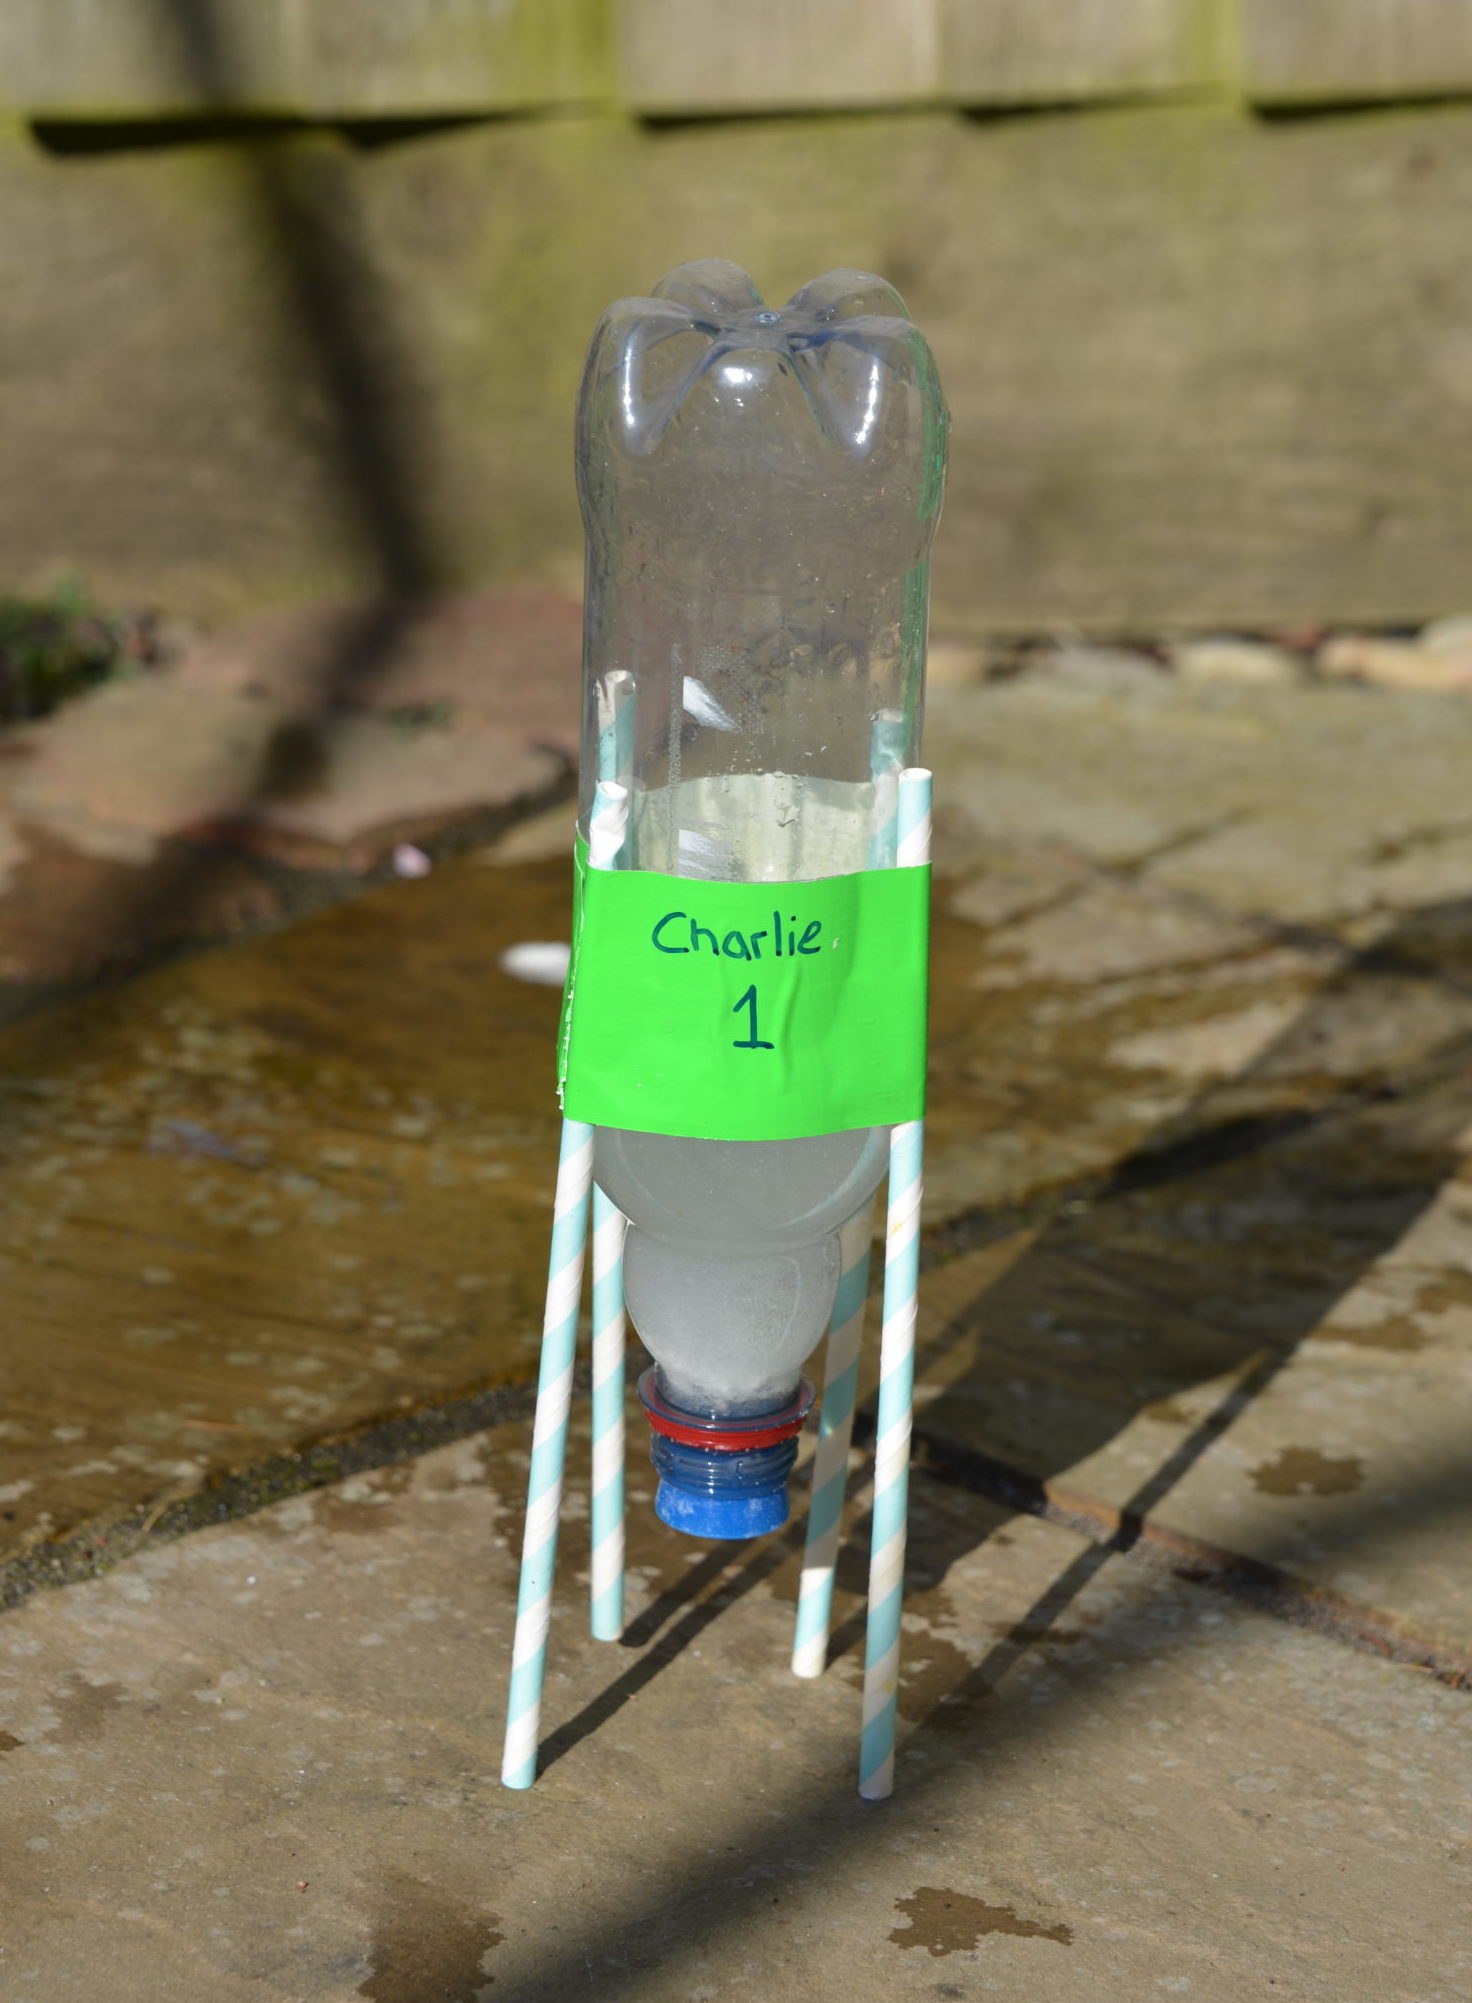 cool water bottle rocket designs